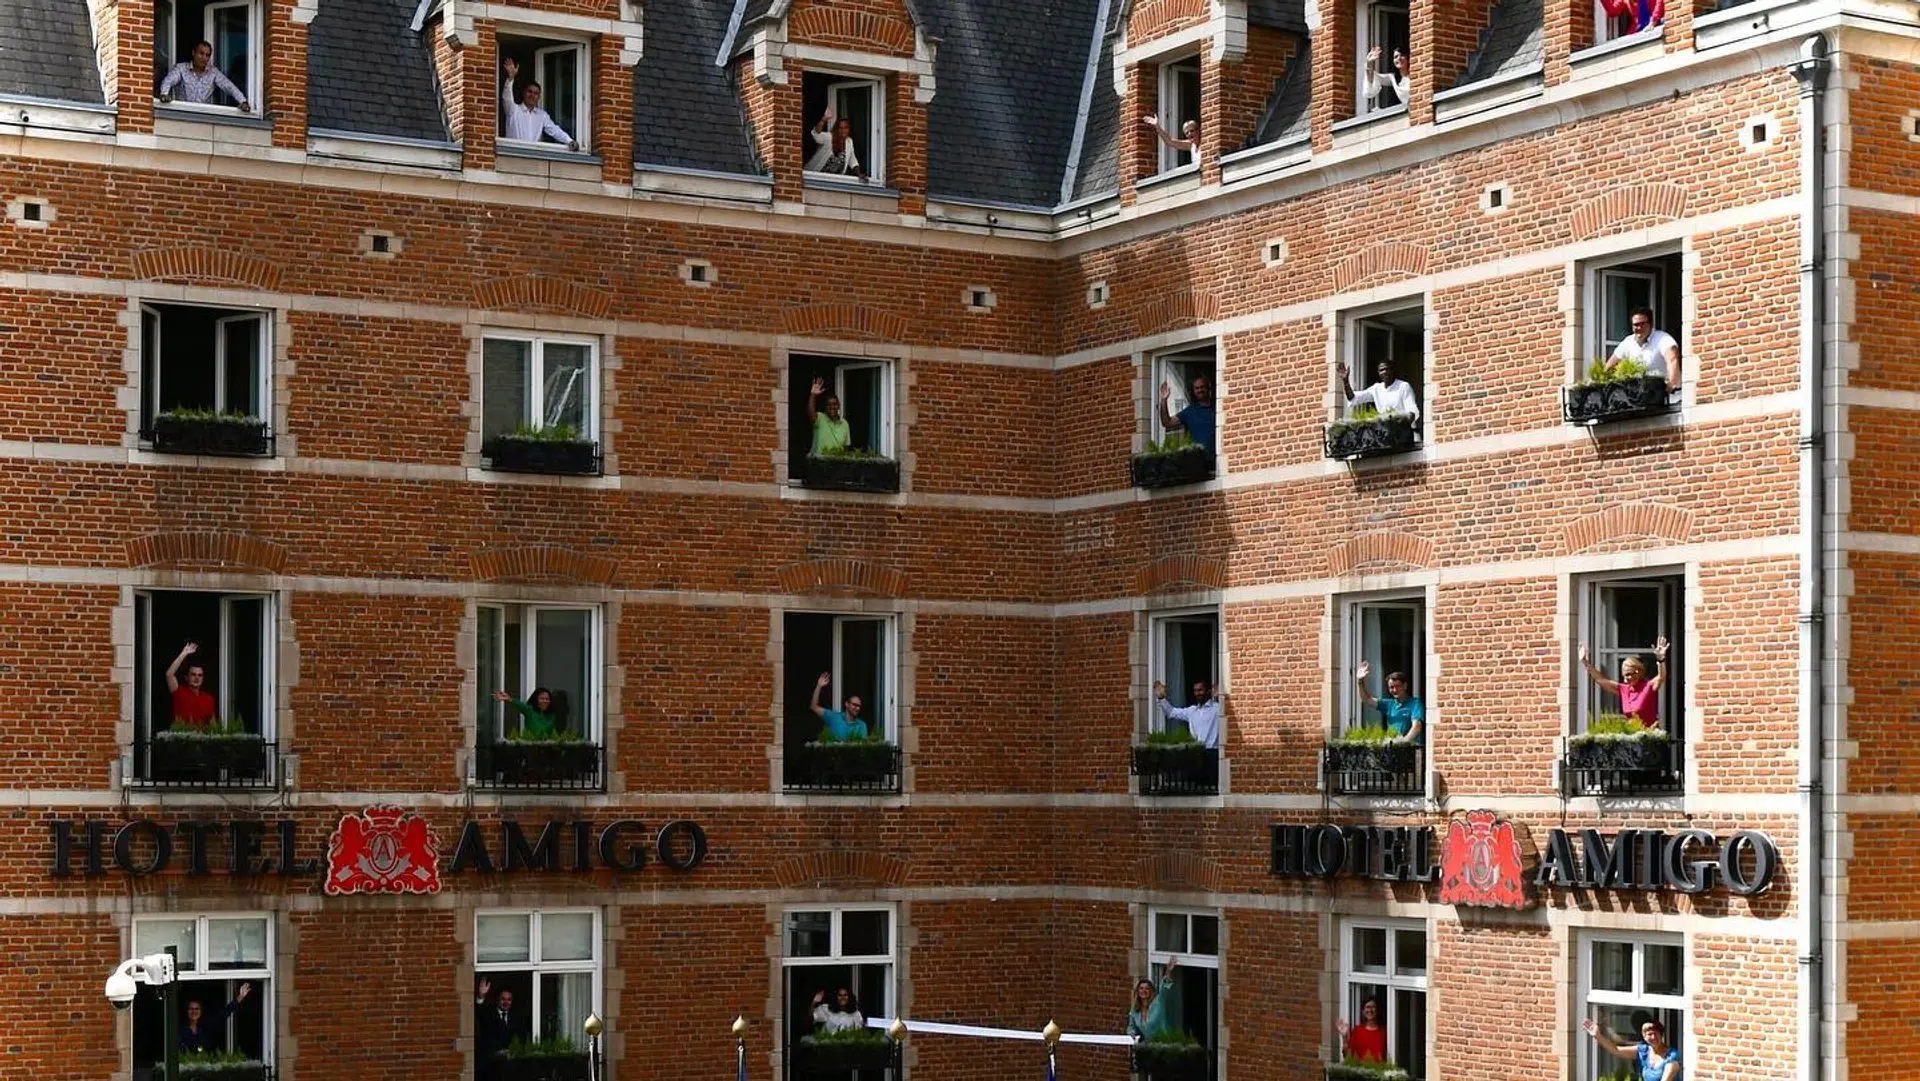 Hotel review Location' - Rocco Forte Hotel Amigo - 2